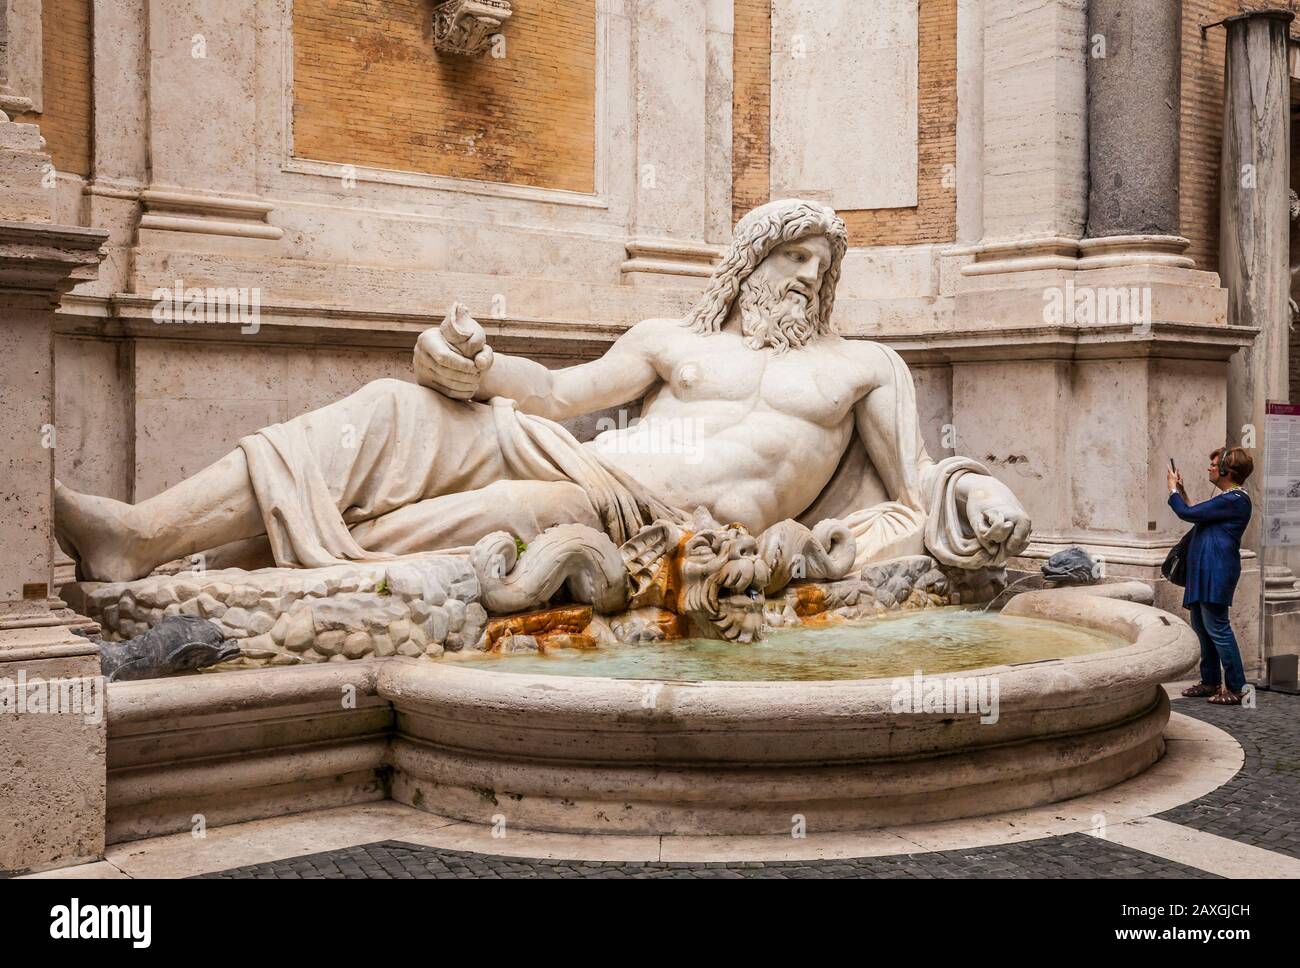 Un touriste prend une photo d'une fontaine avec Marforio, River God, Capitolin Museum, Rome, Italie. Banque D'Images